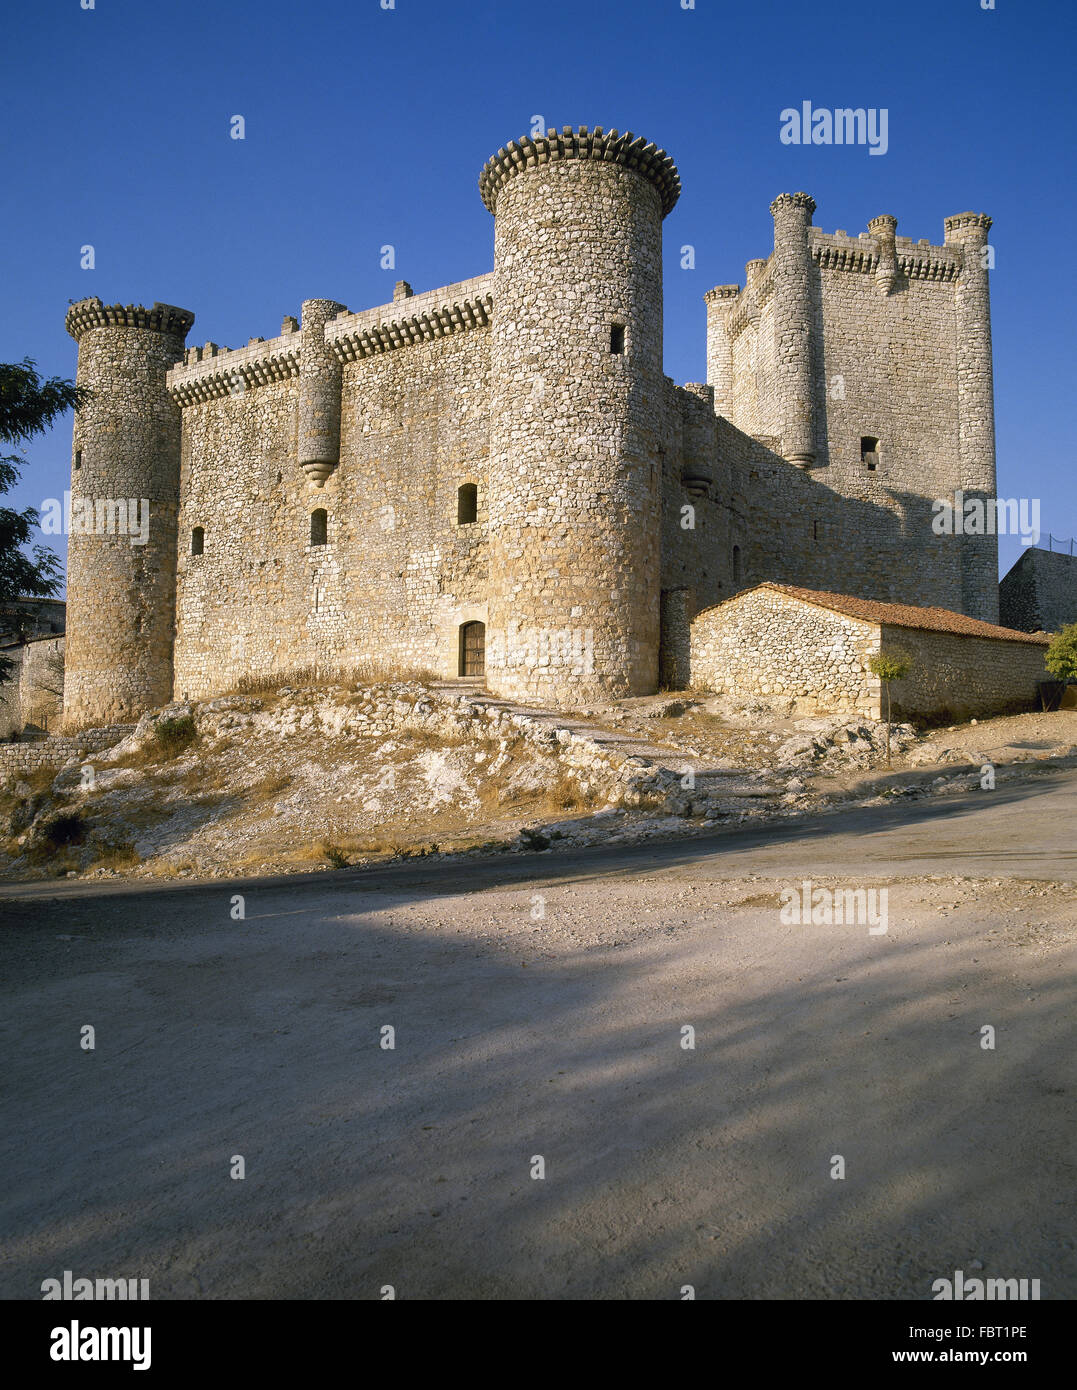 Spagna. Torija. Castello. Fortezza militare costruita dai Templari nel XI secolo. Foto Stock